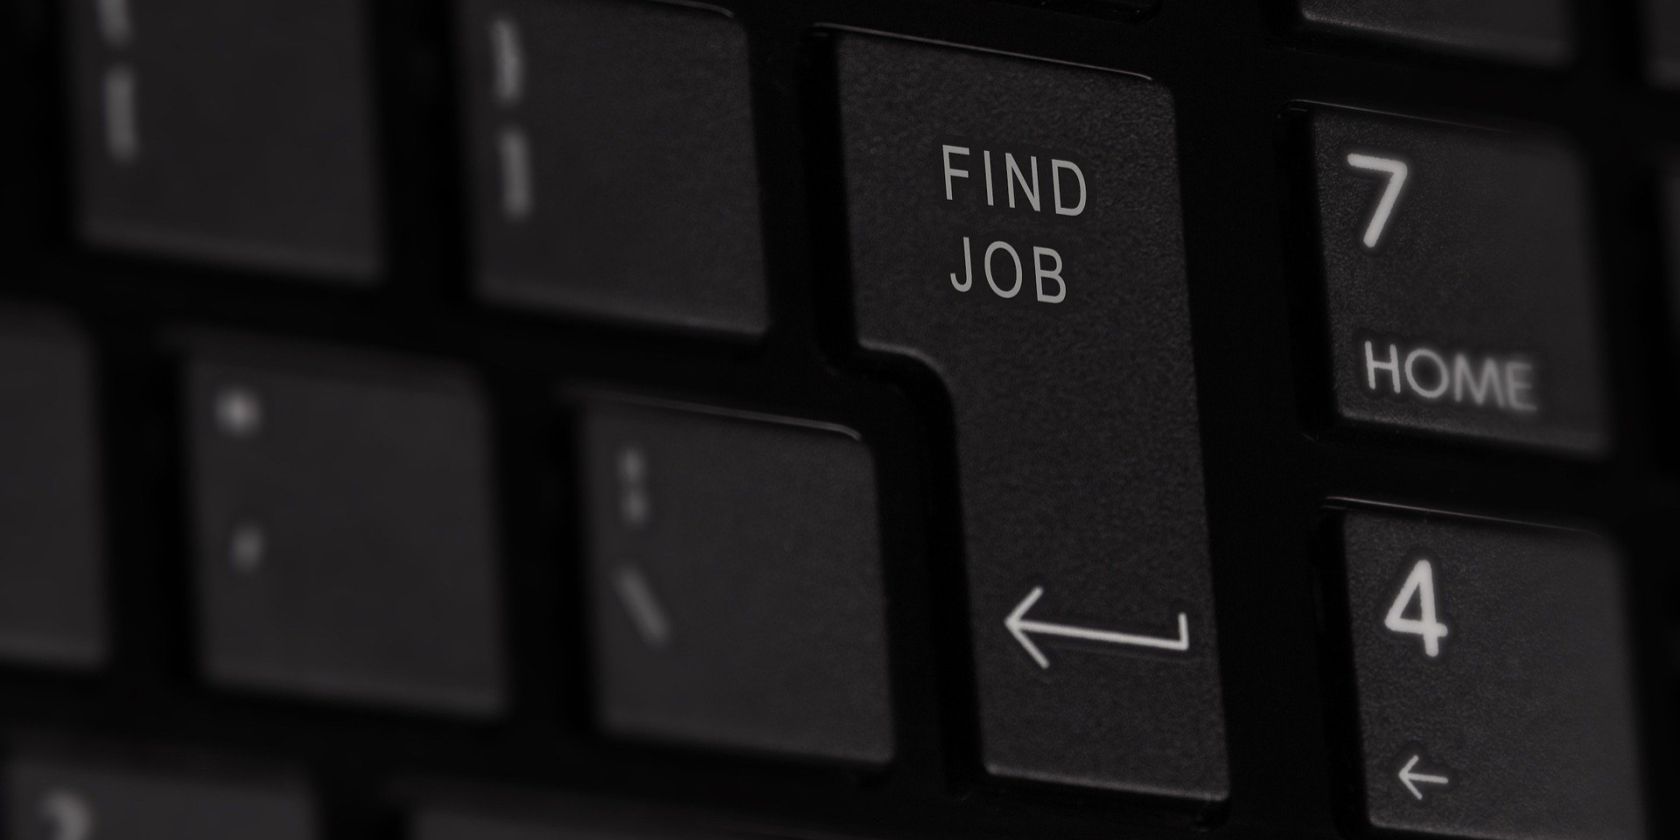 Find job written on keyboard key